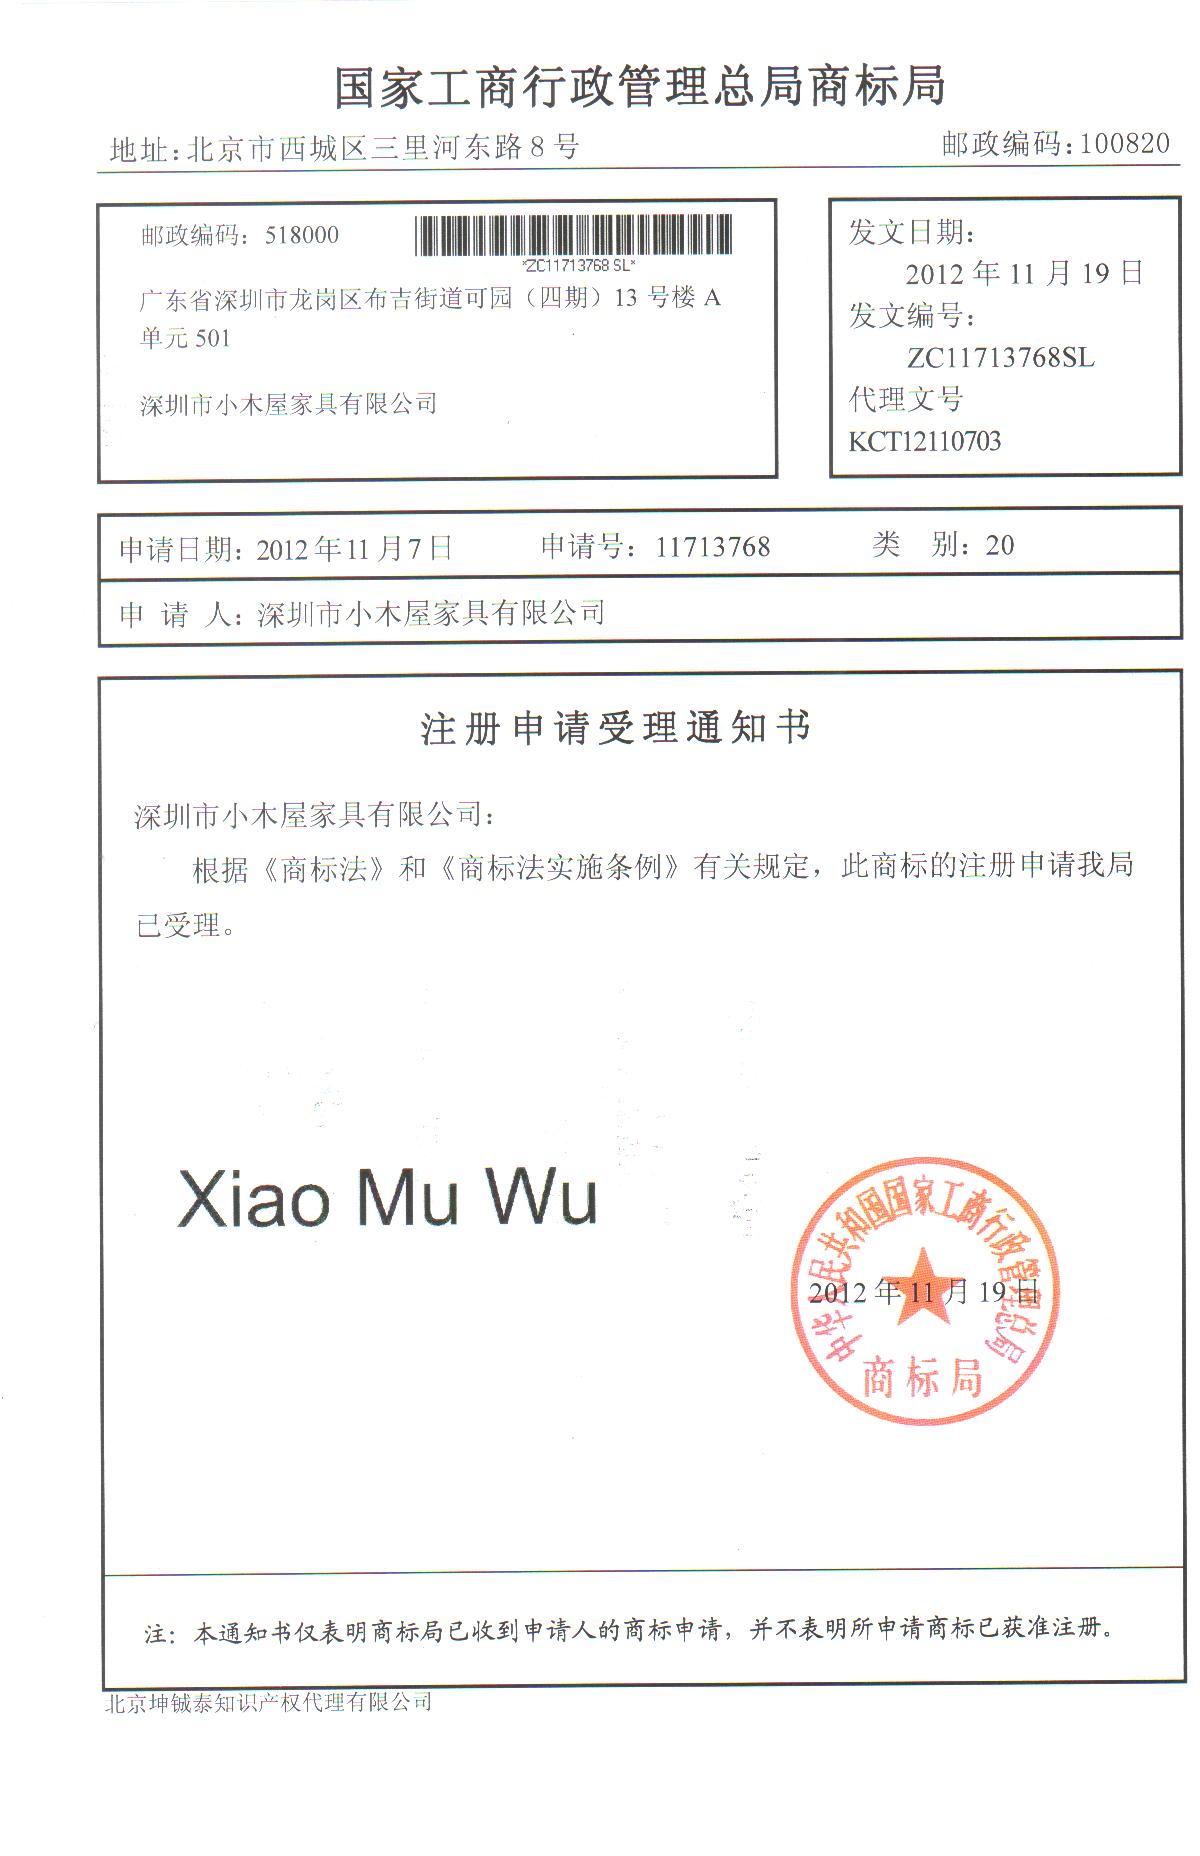 Xiao Mu Wu